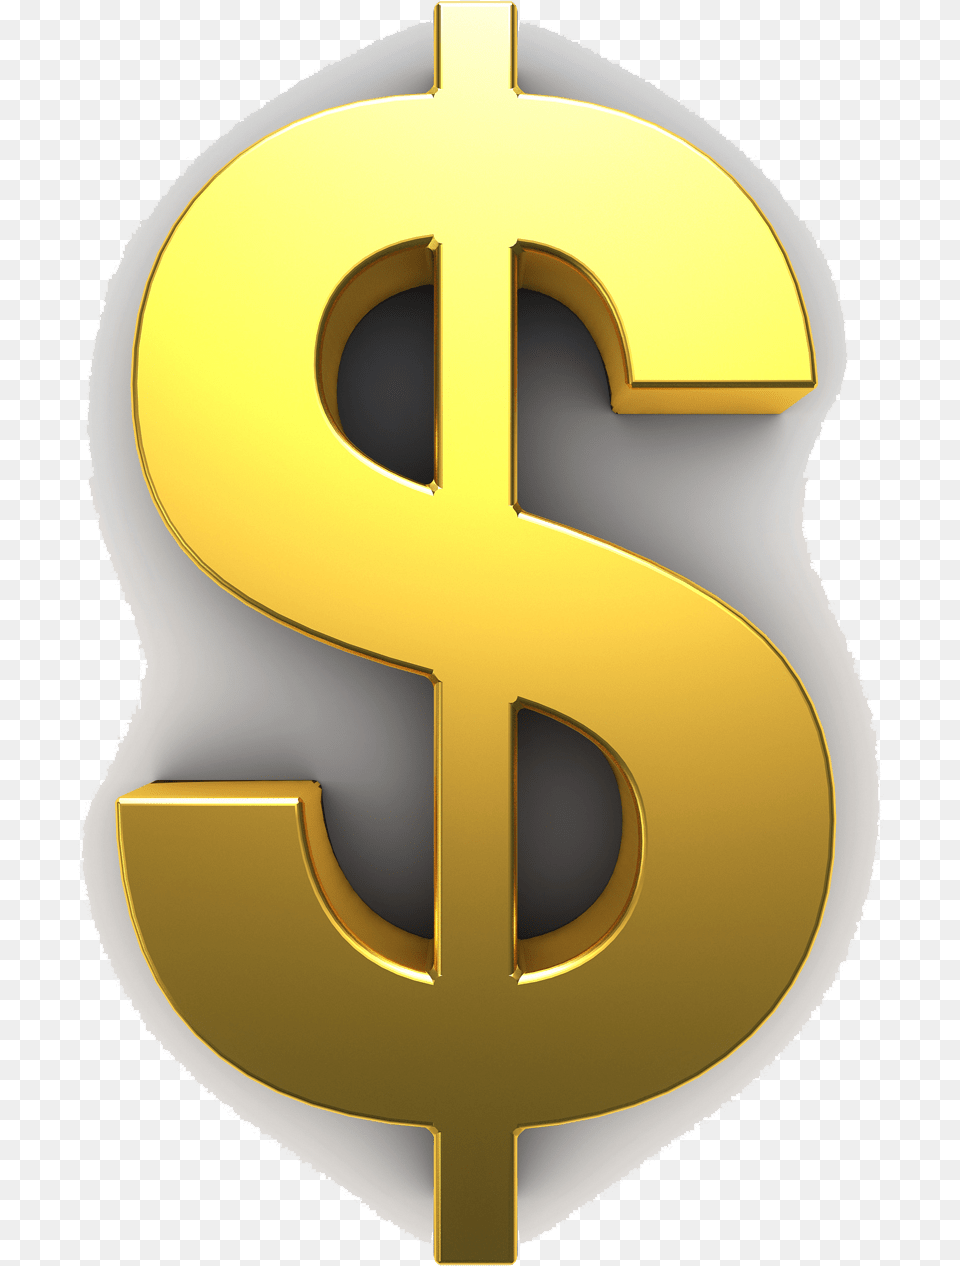 Gold Clip Art Dollar Sign, Symbol, Number, Text, Chandelier Free Transparent Png